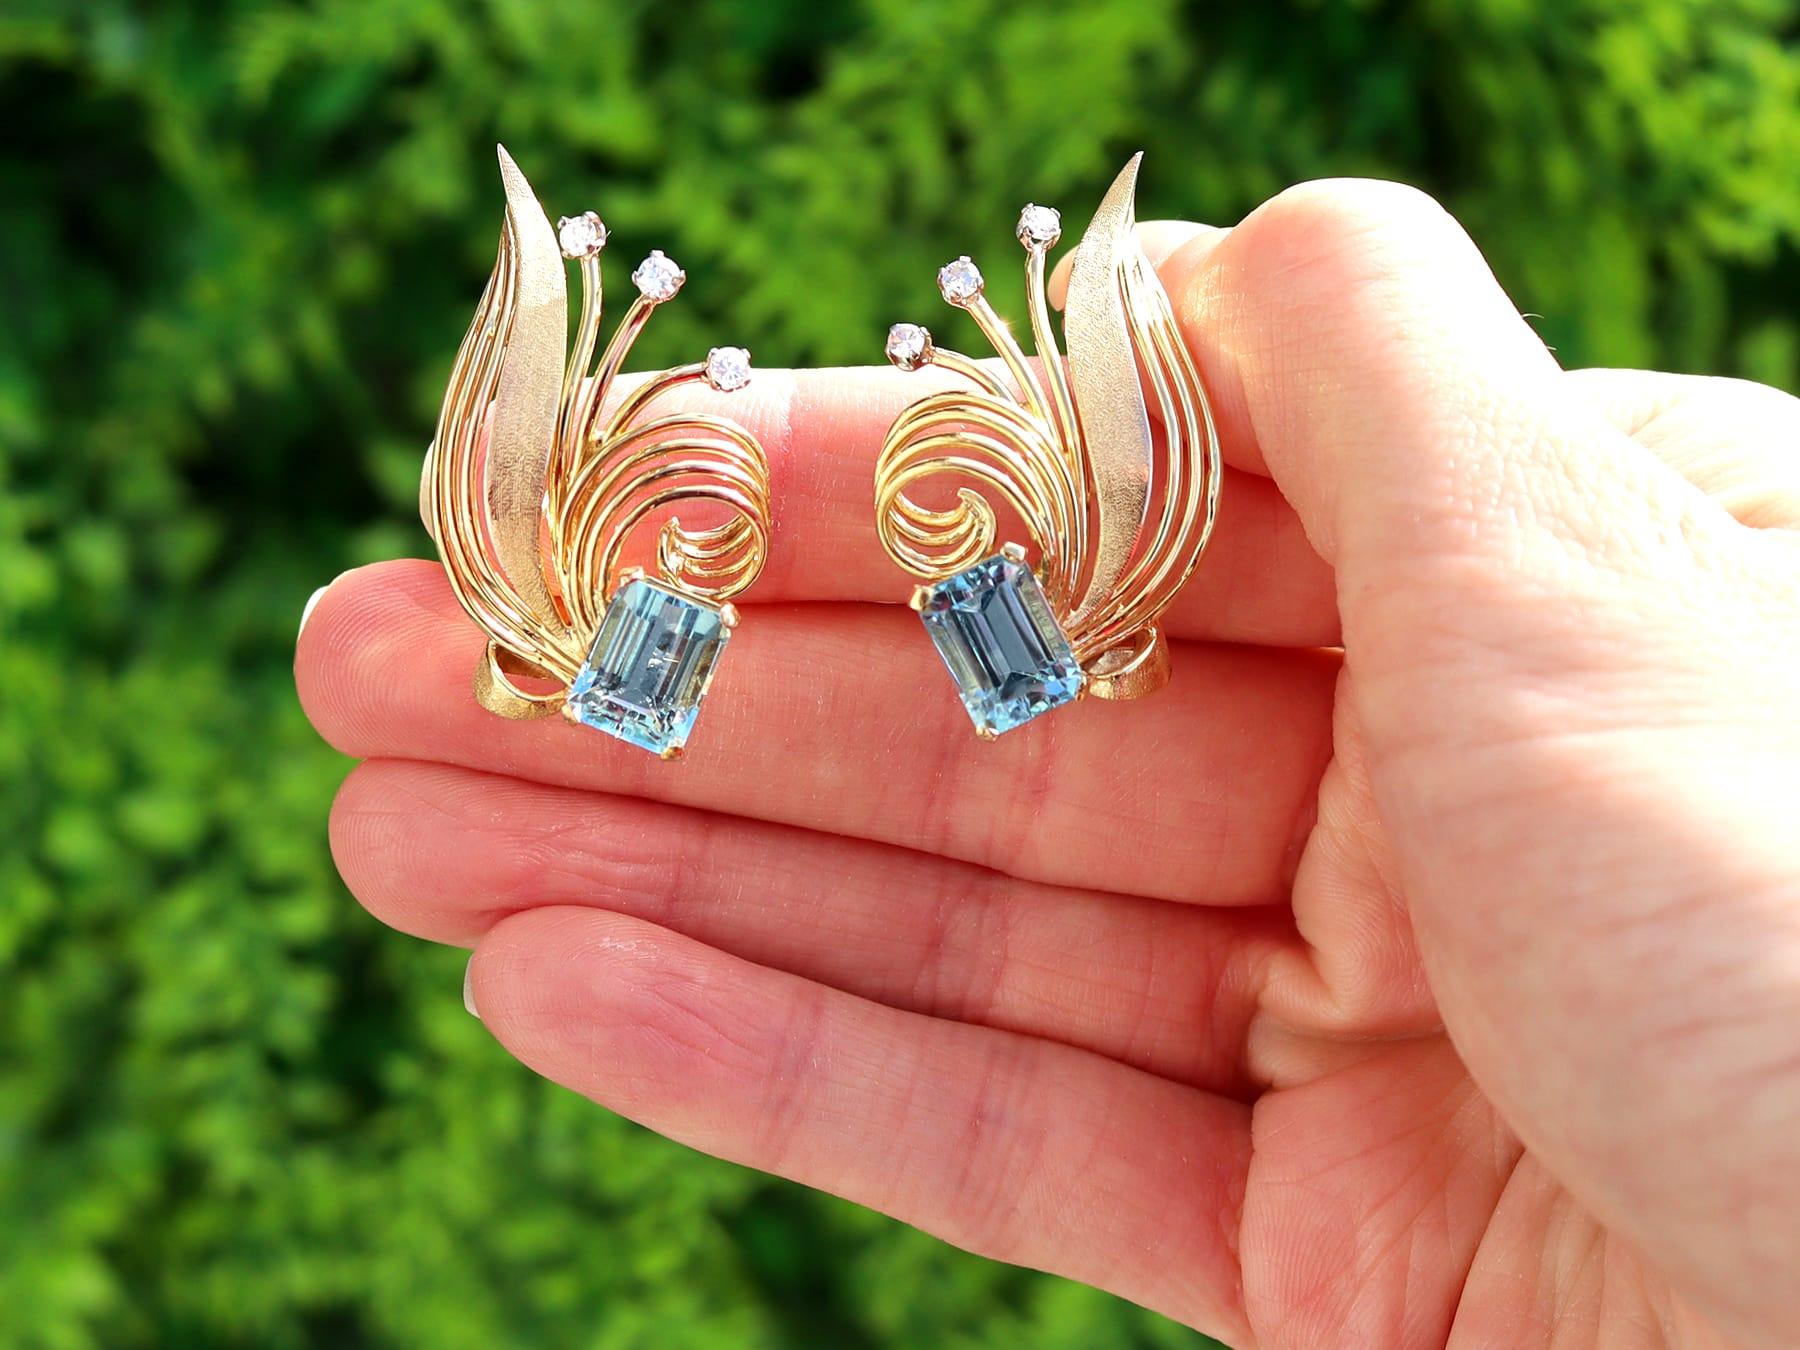 Ein feines und beeindruckendes Paar Vintage-Ohrringe mit 6,30 Karat natürlichem Aquamarin und 0,36 Karat Diamant aus 18 Karat Gelbgold; Teil unserer vielfältigen Vintage-Schmuckkollektion.

Diese atemberaubenden Aquamarin-Diamant-Ohrringe im